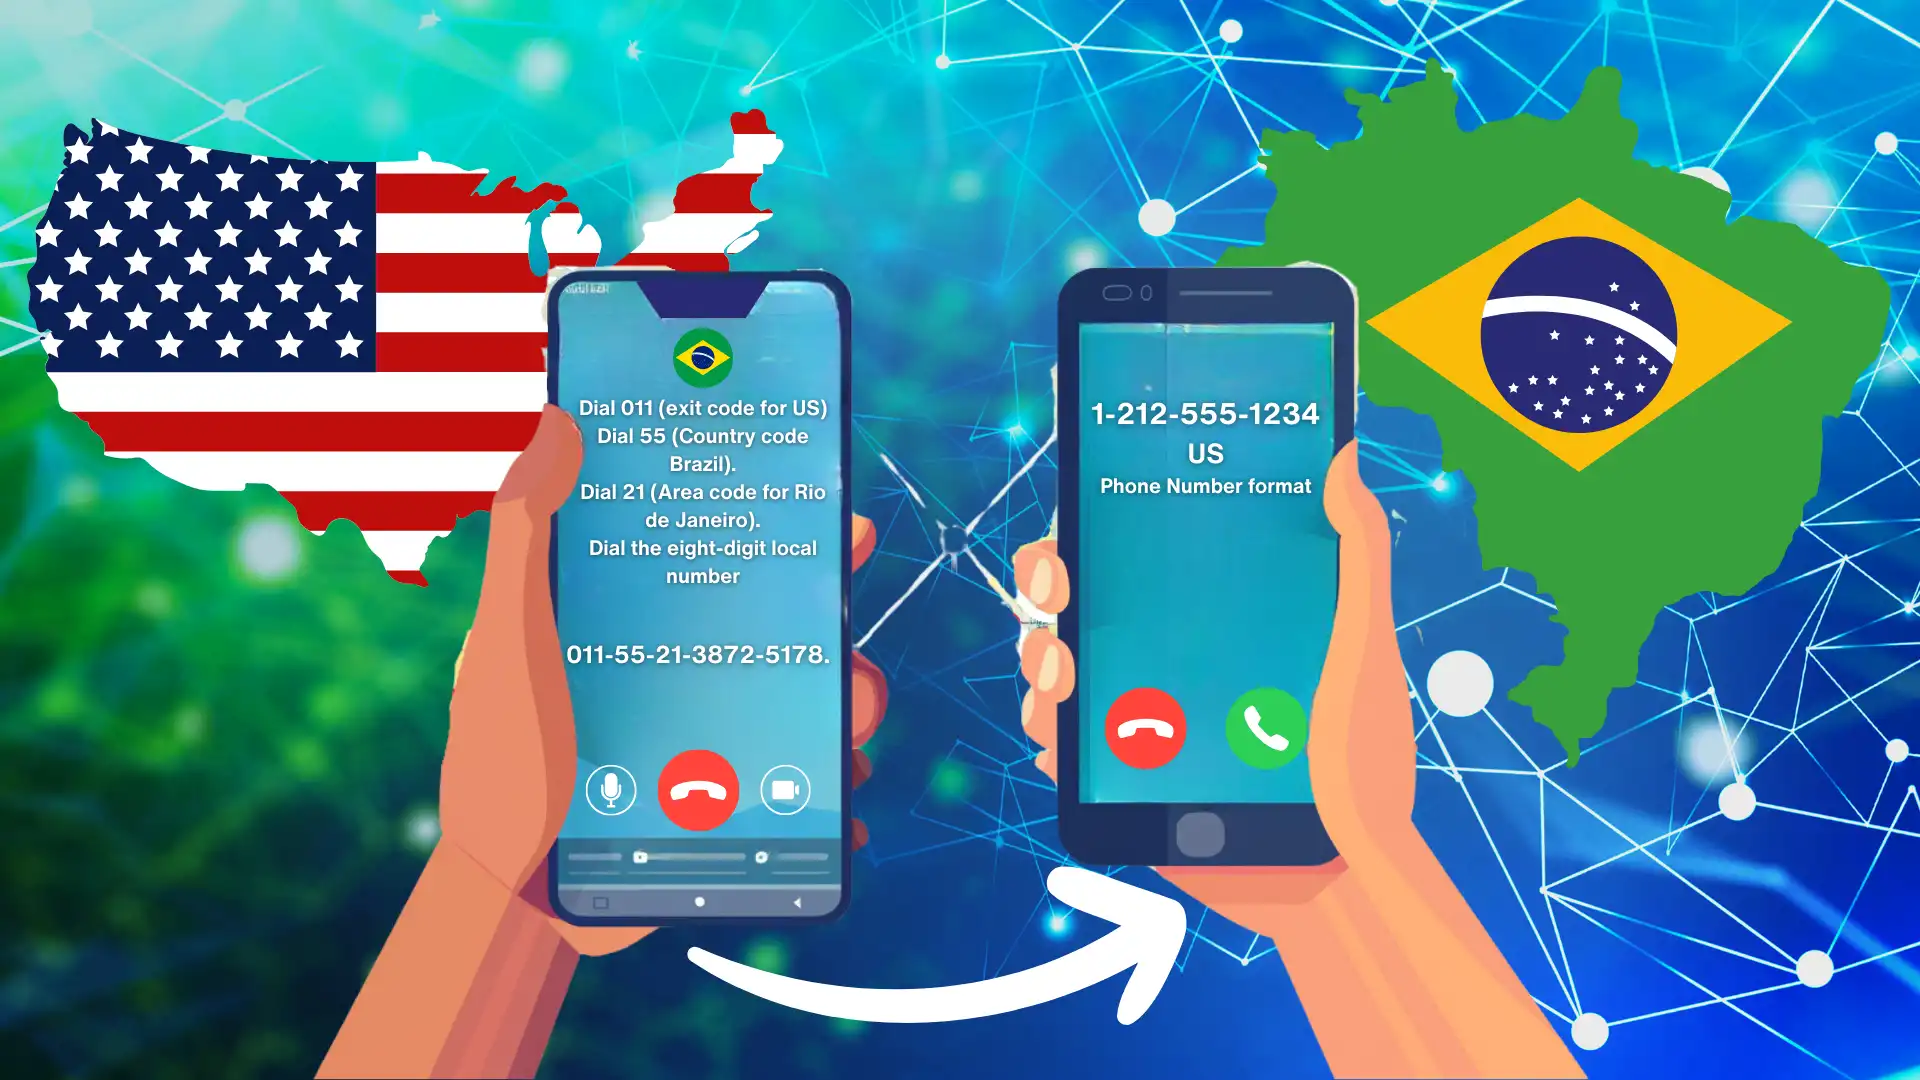 De basisprincipes van bellen naar Brazilië begrijpen